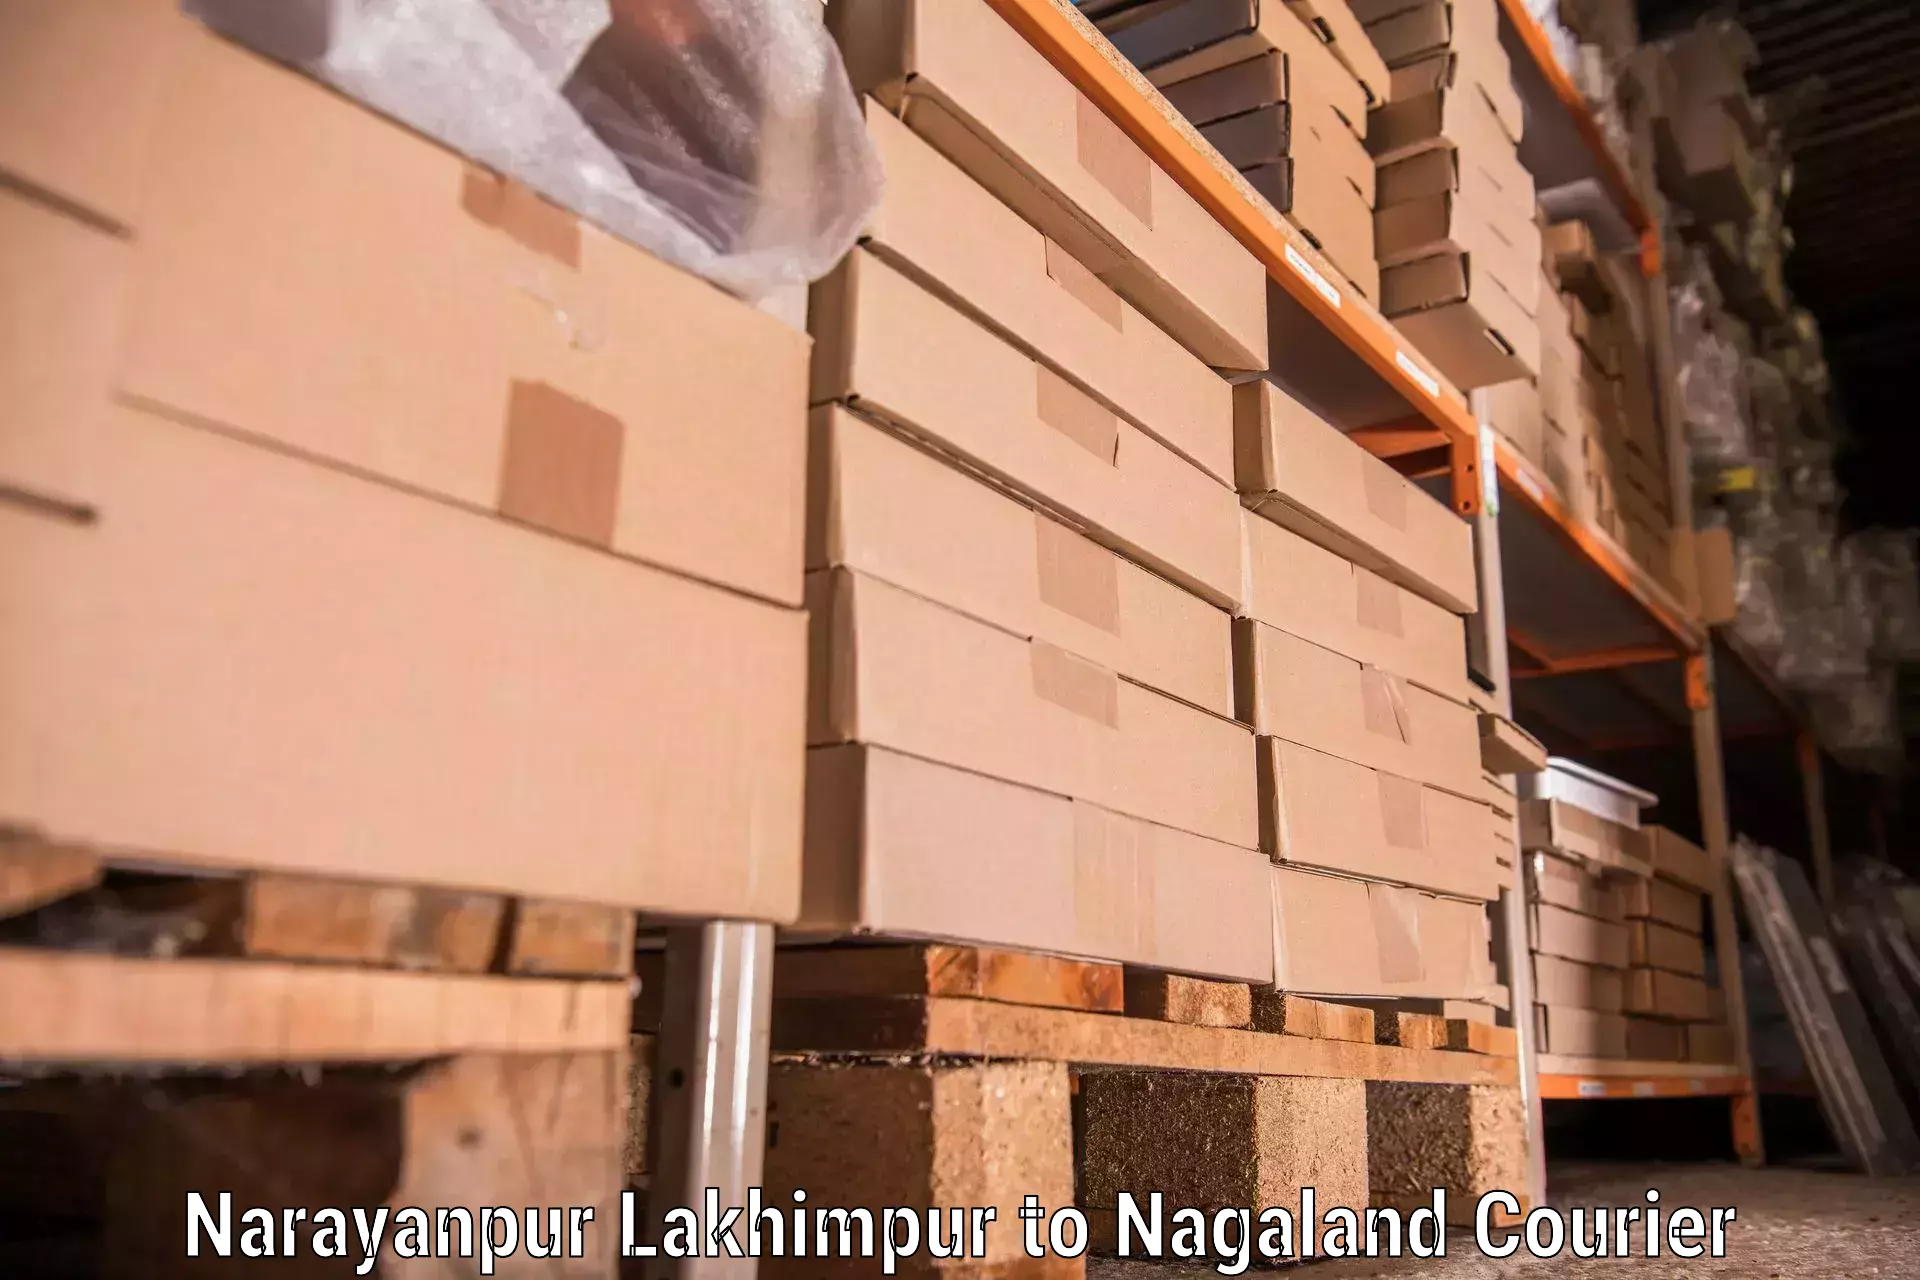 Furniture relocation experts Narayanpur Lakhimpur to Phek